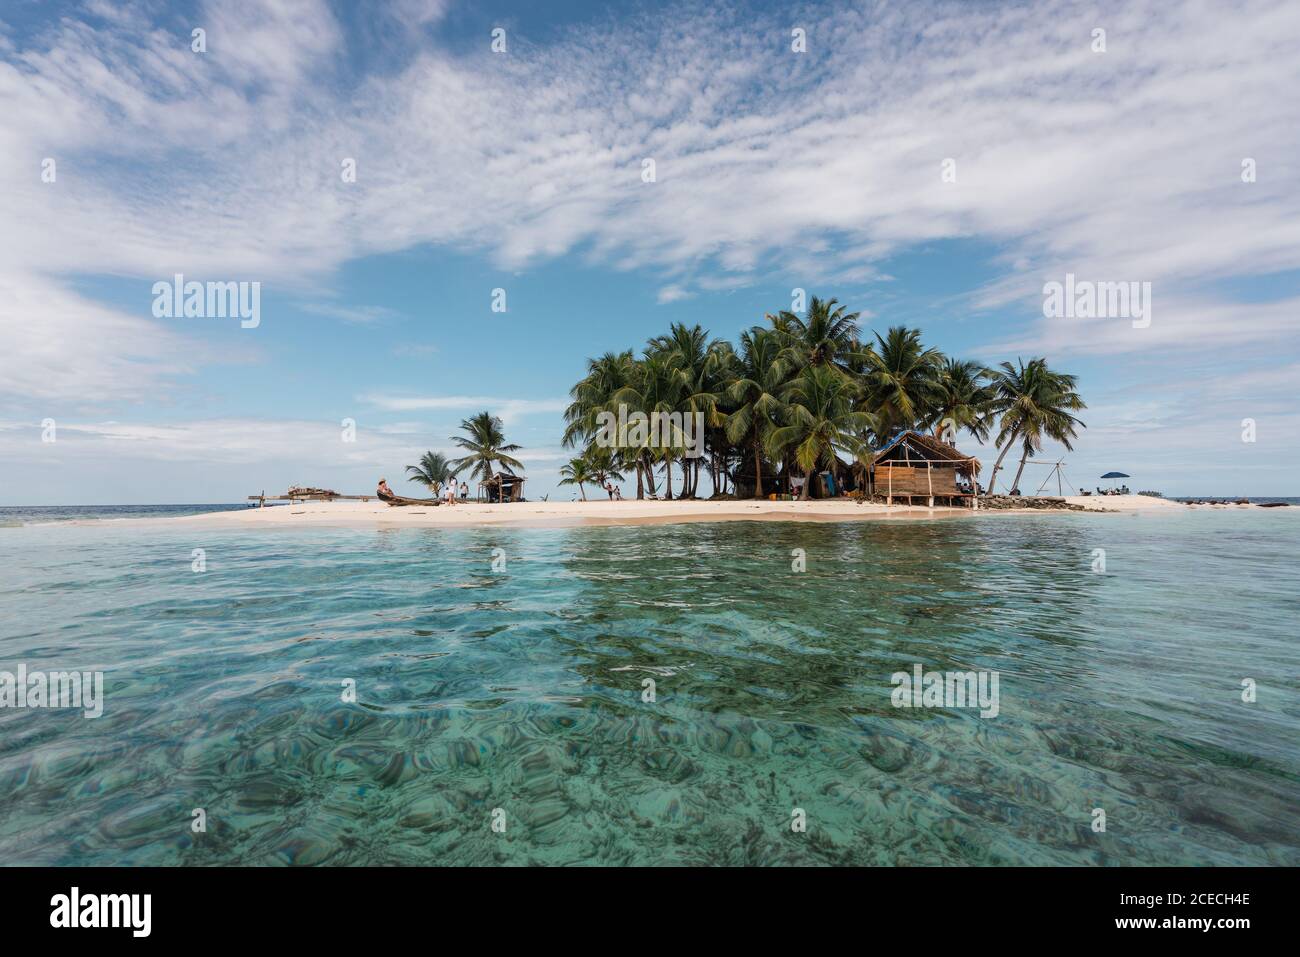 Vue pittoresque sur les arbres tropicaux, plage de sable et construction entre mer et ciel bleu dans les îles de San Blas, Panama Banque D'Images